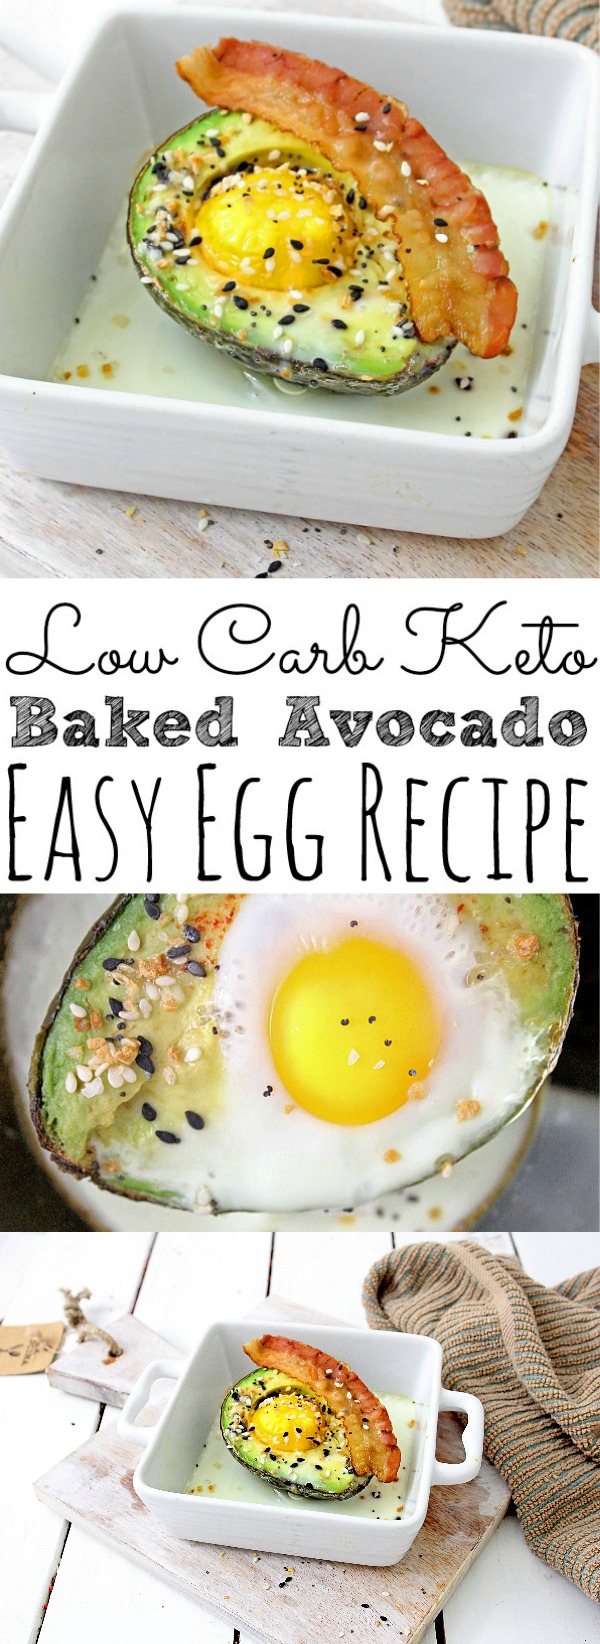 Baked Avocado Egg Recipe Low Carb